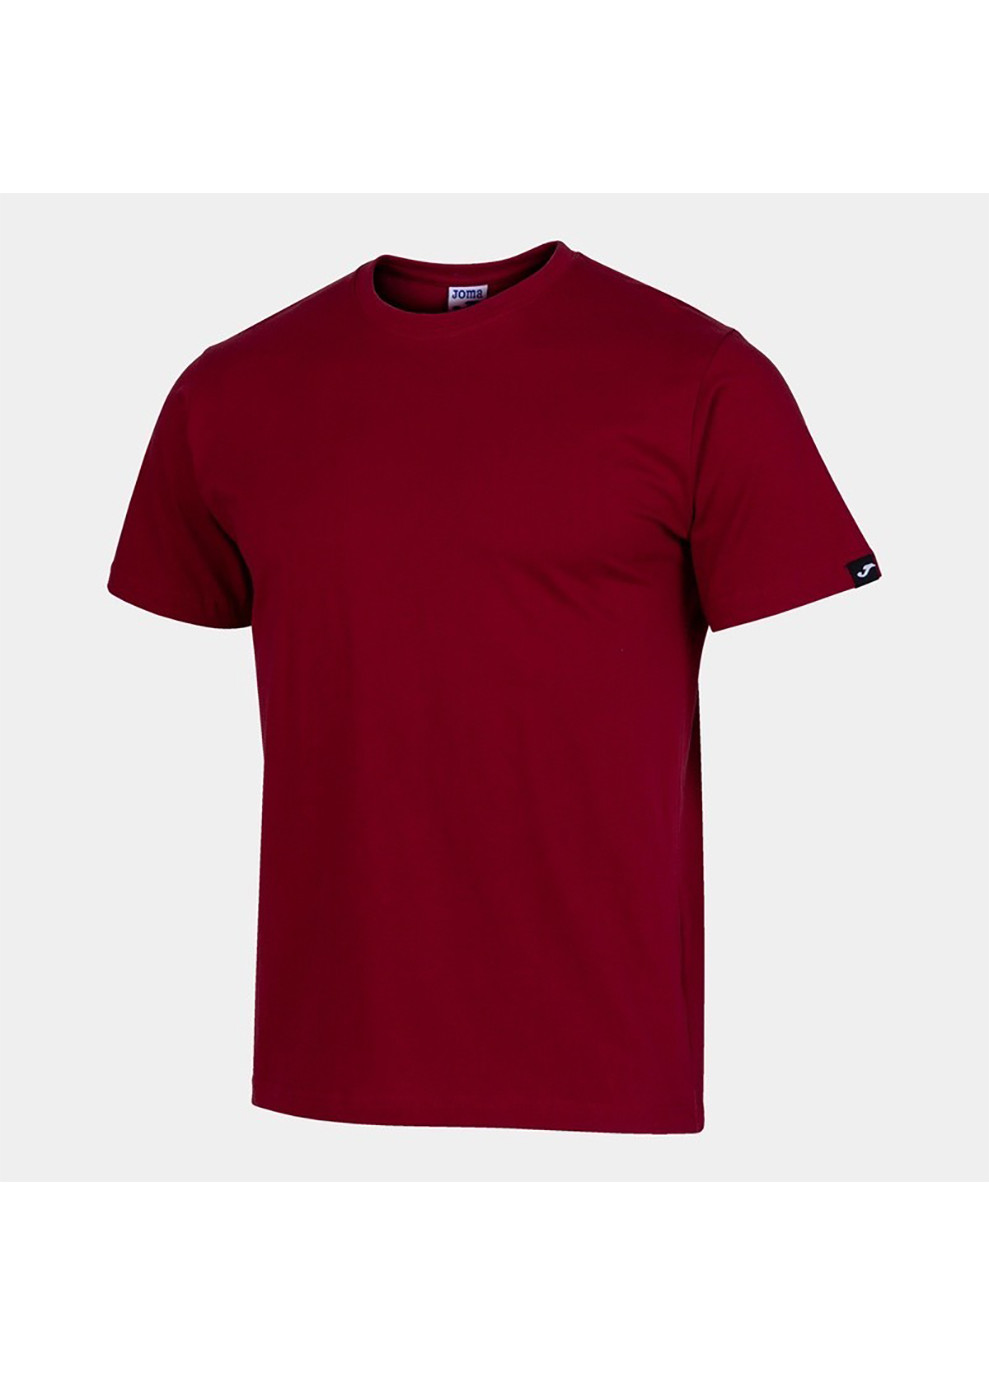 Бордовая футболка desert short sleeve t-shirt бордовый Joma